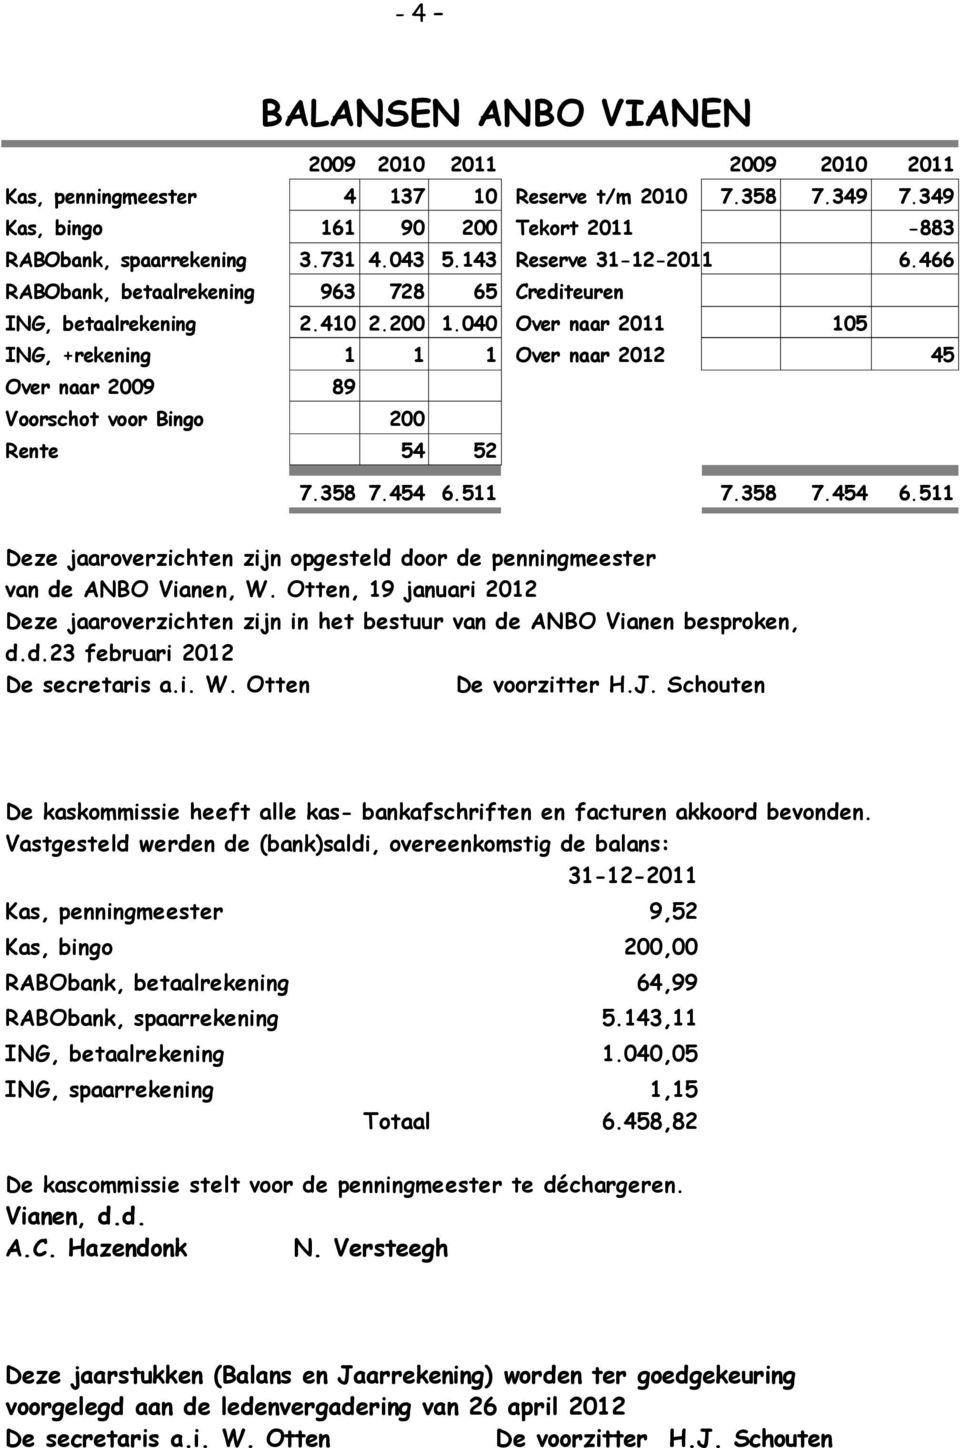 040 Over naar 2011 105 ING, +rekening 1 1 1 Over naar 2012 45 Over naar 2009 89 Voorschot voor Bingo 200 Rente 54 52 7.358 7.454 6.